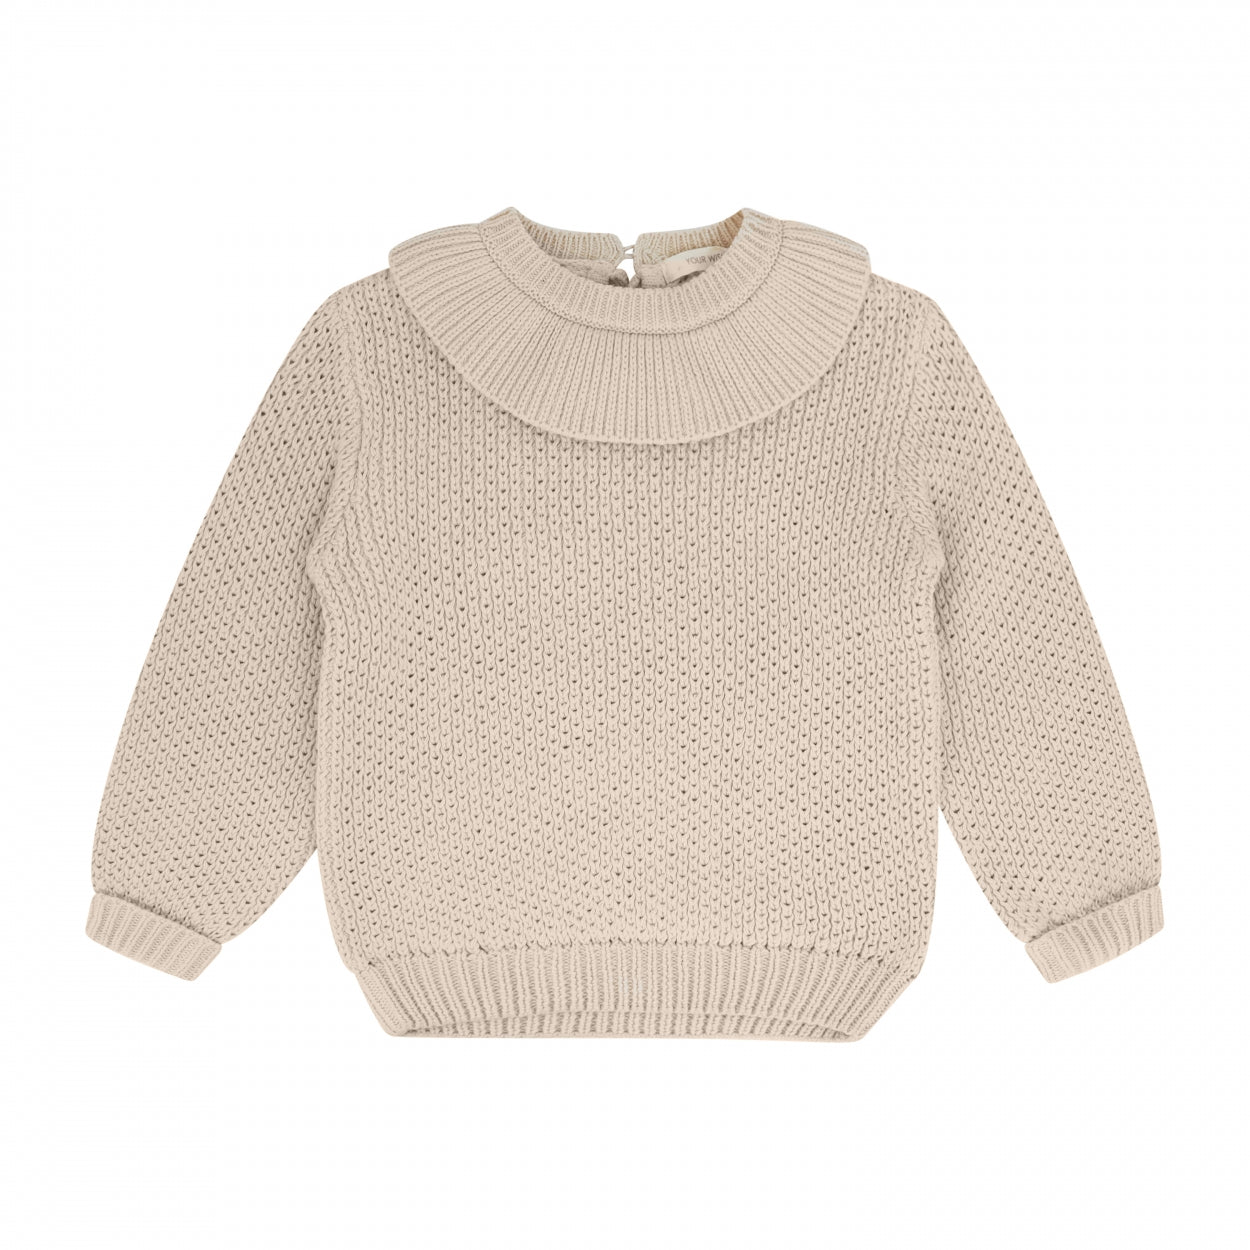 Meisjes Sweater Rib Knit | Gianna van Your Wishes in de kleur Honeycomb in maat 134-140.